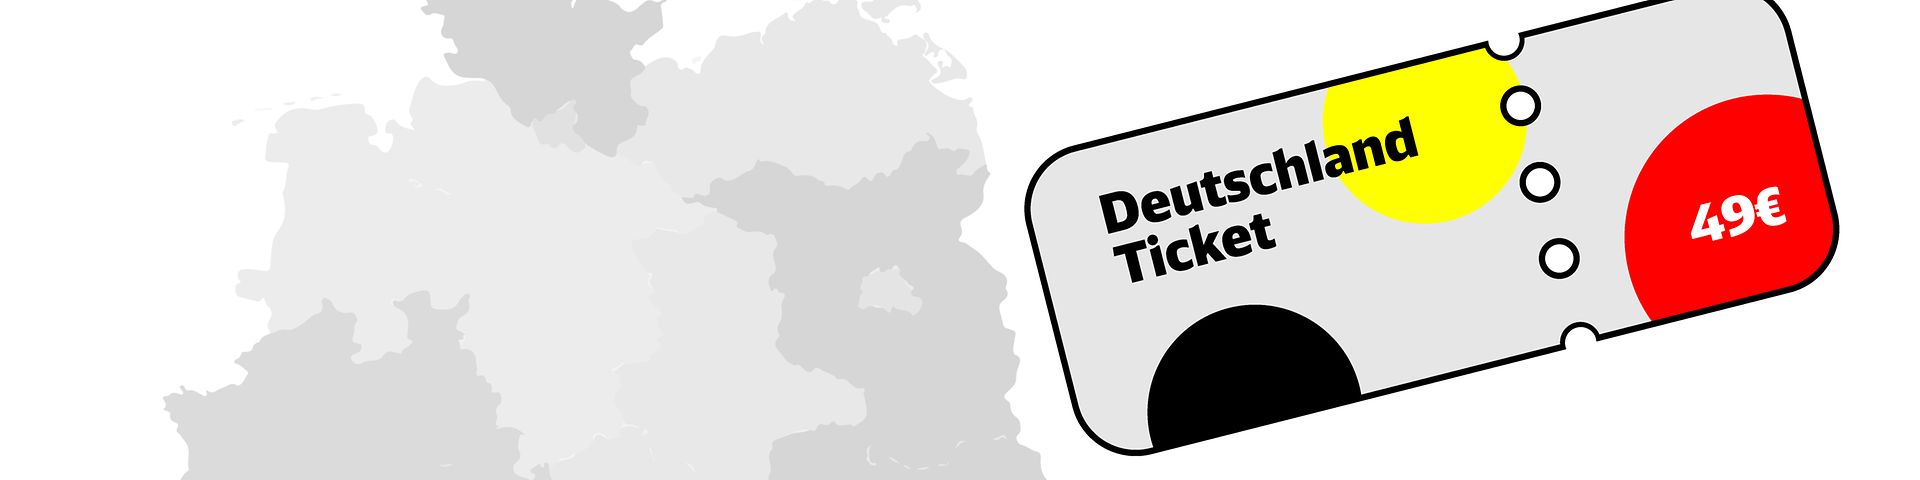 Deutschland_Ticket_Grafik